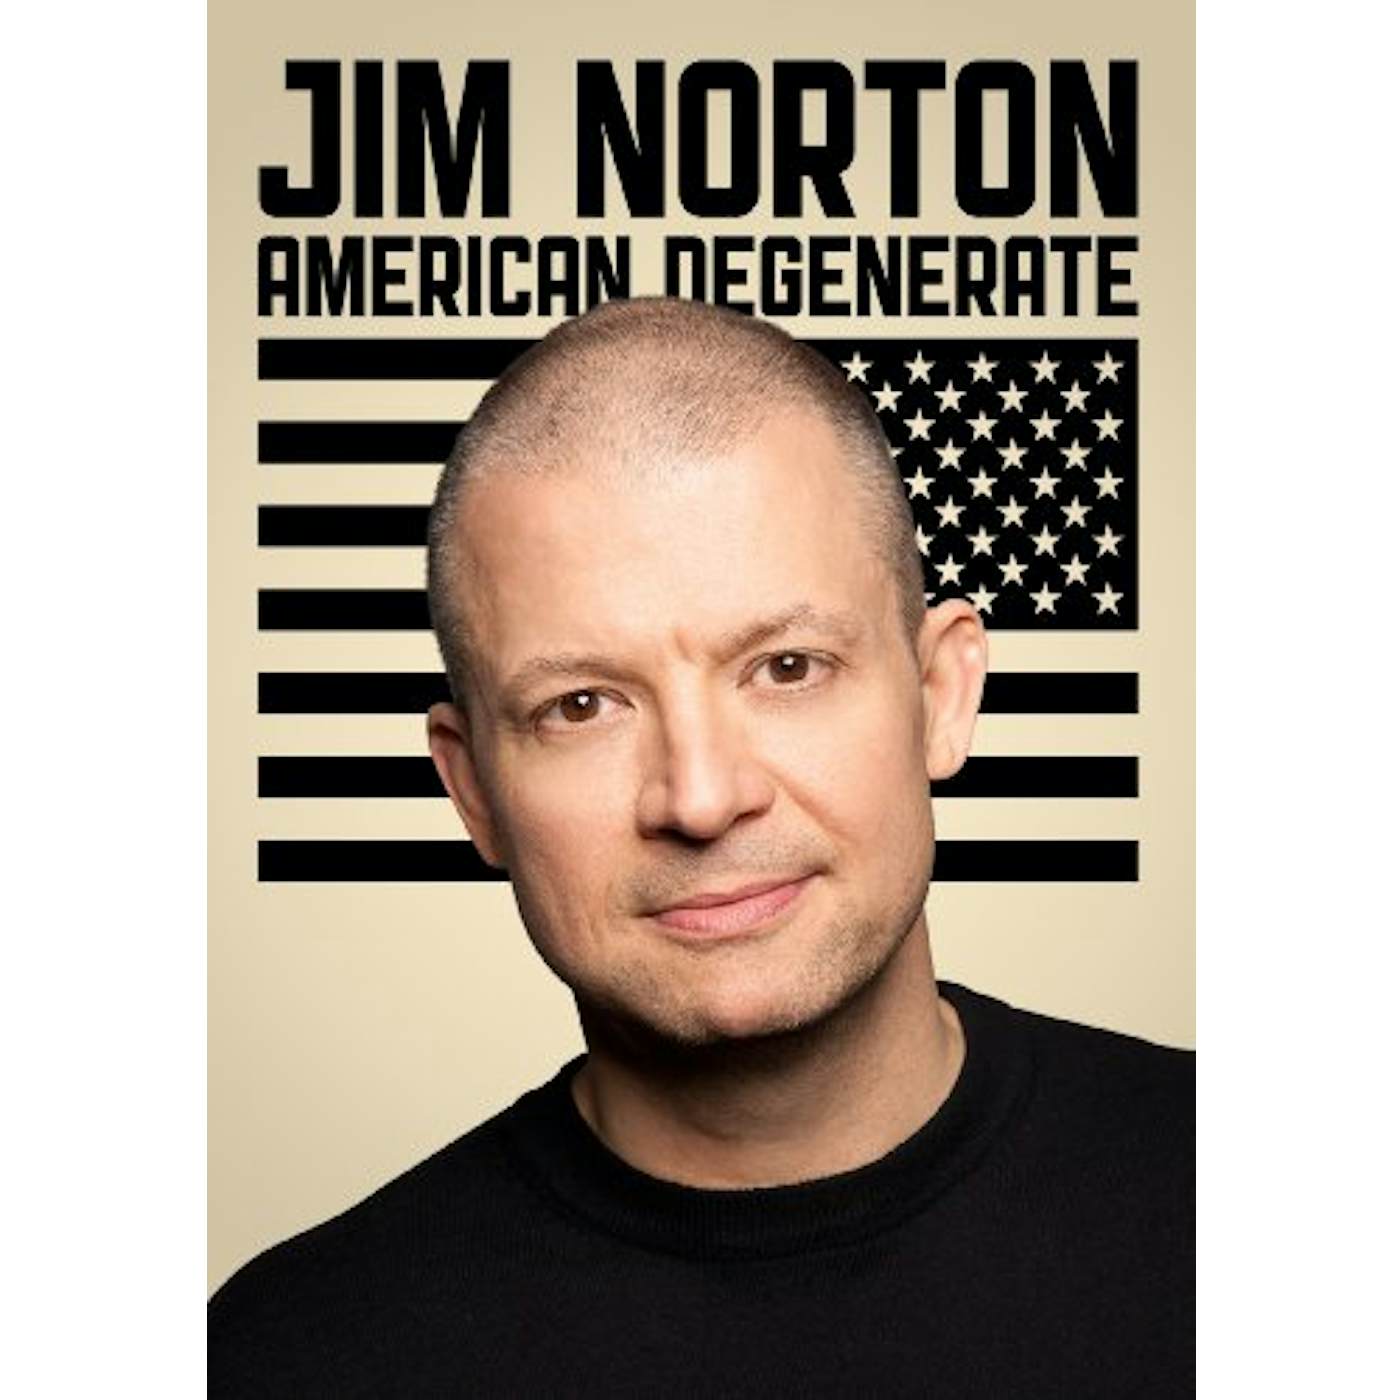 Jim Norton AMERICAN DEGENERATE DVD